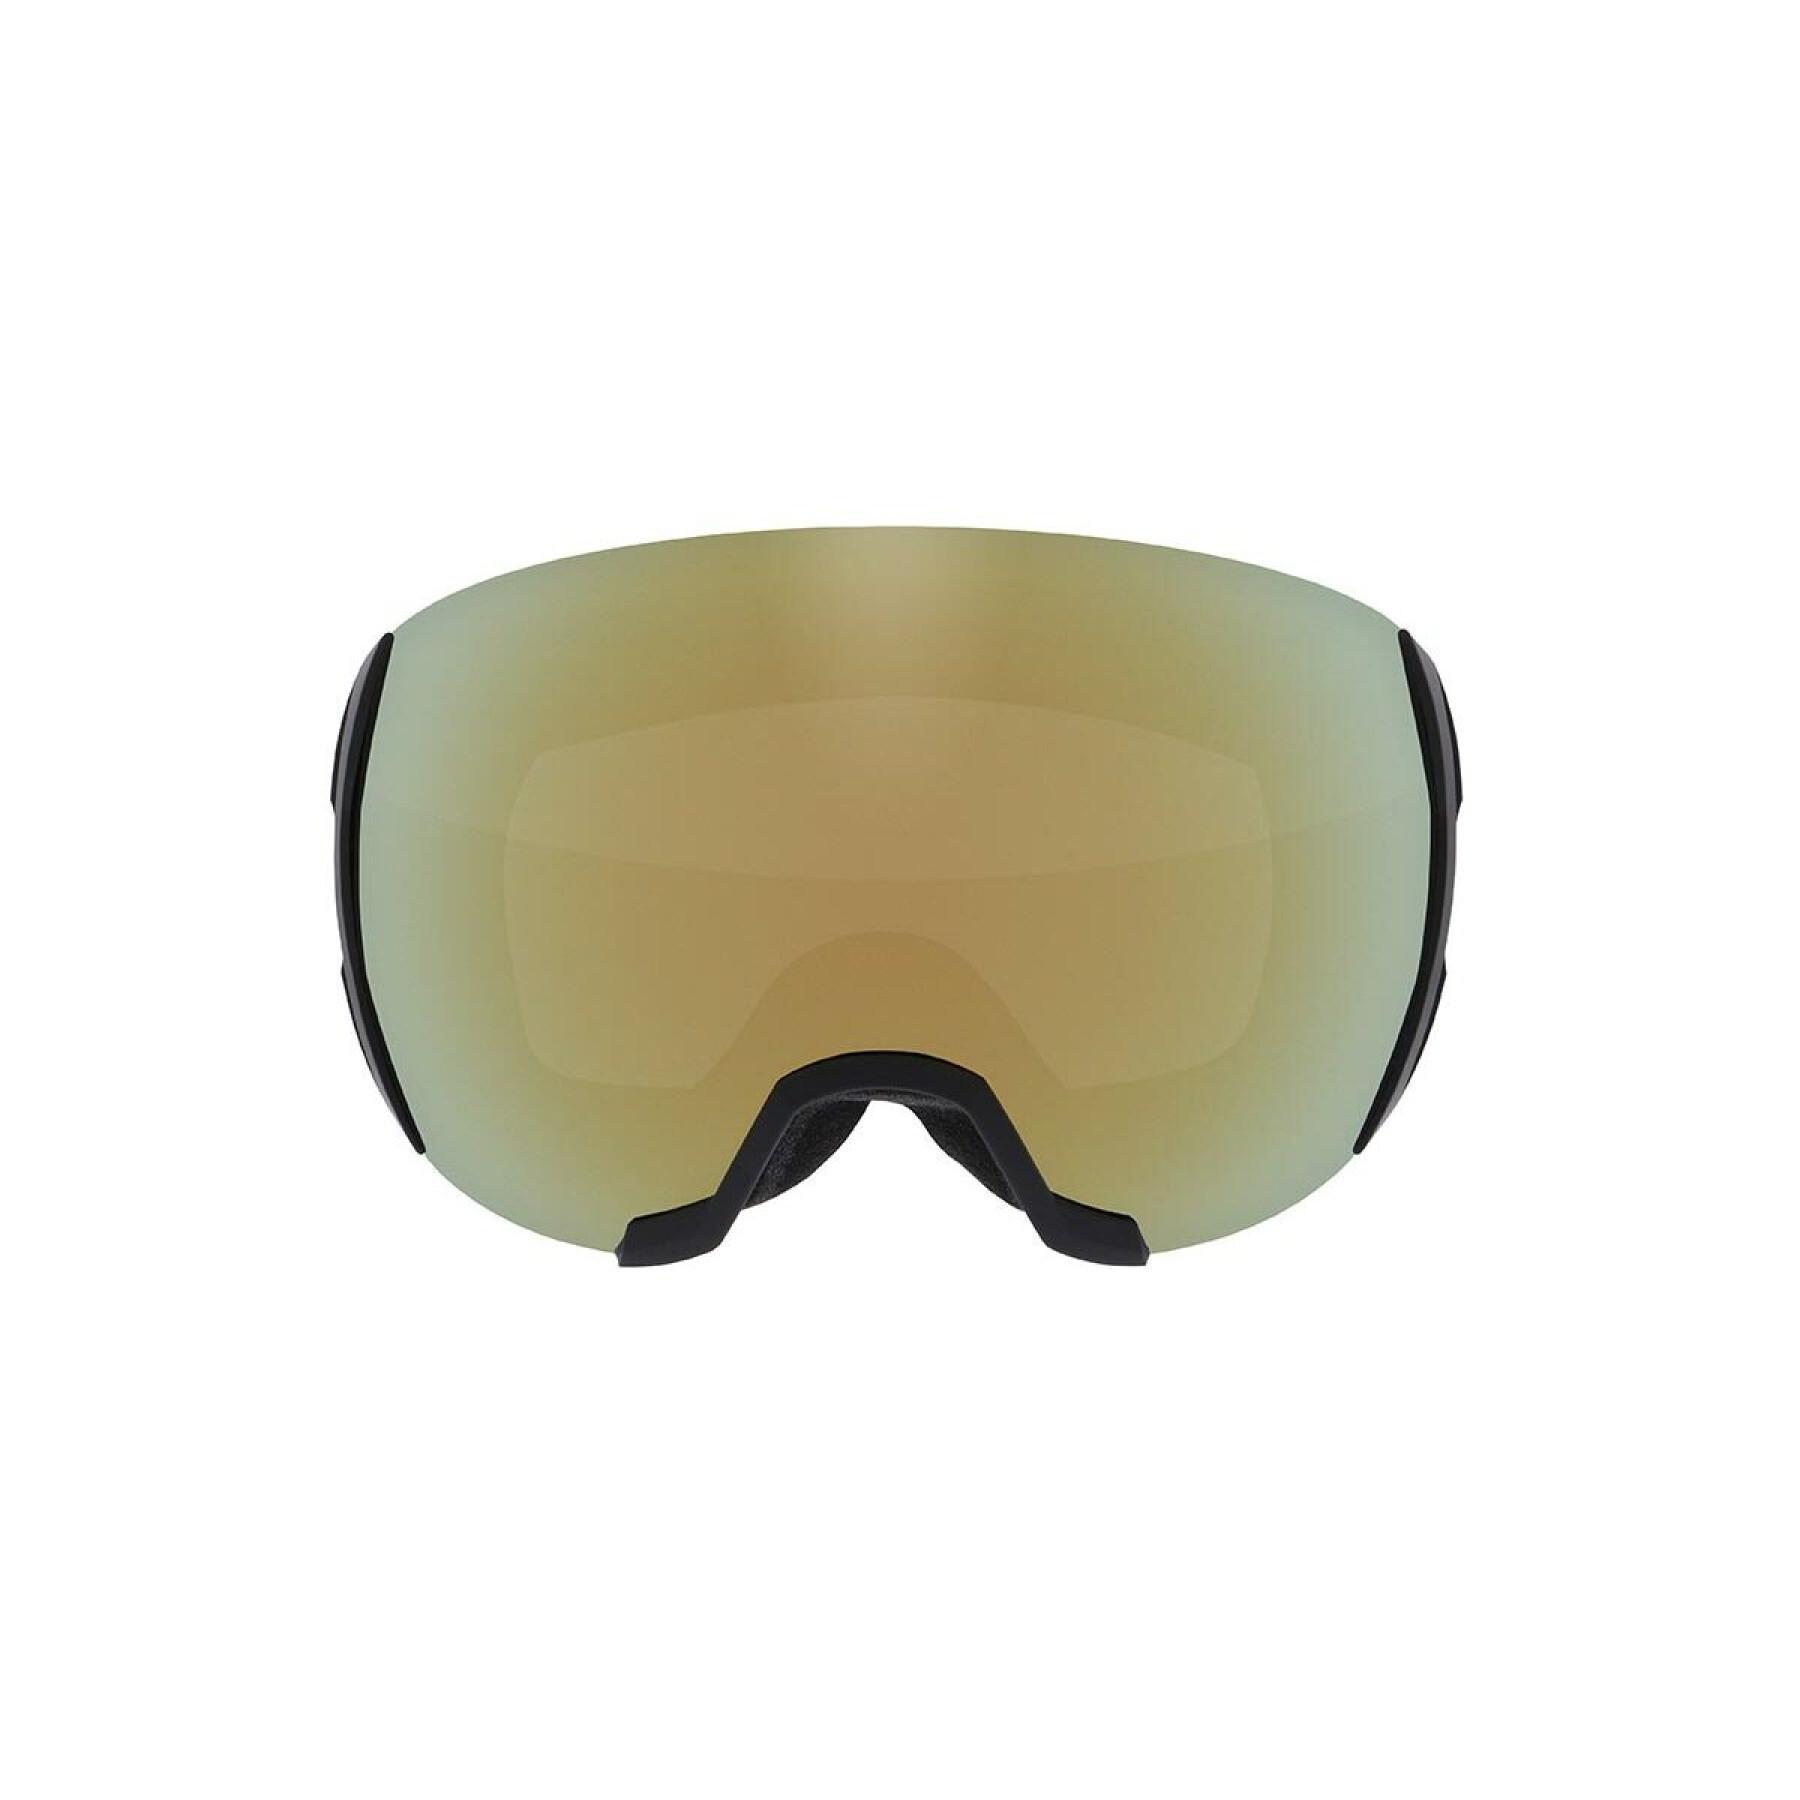 Maska narciarska Redbull Spect Eyewear Sight-005S